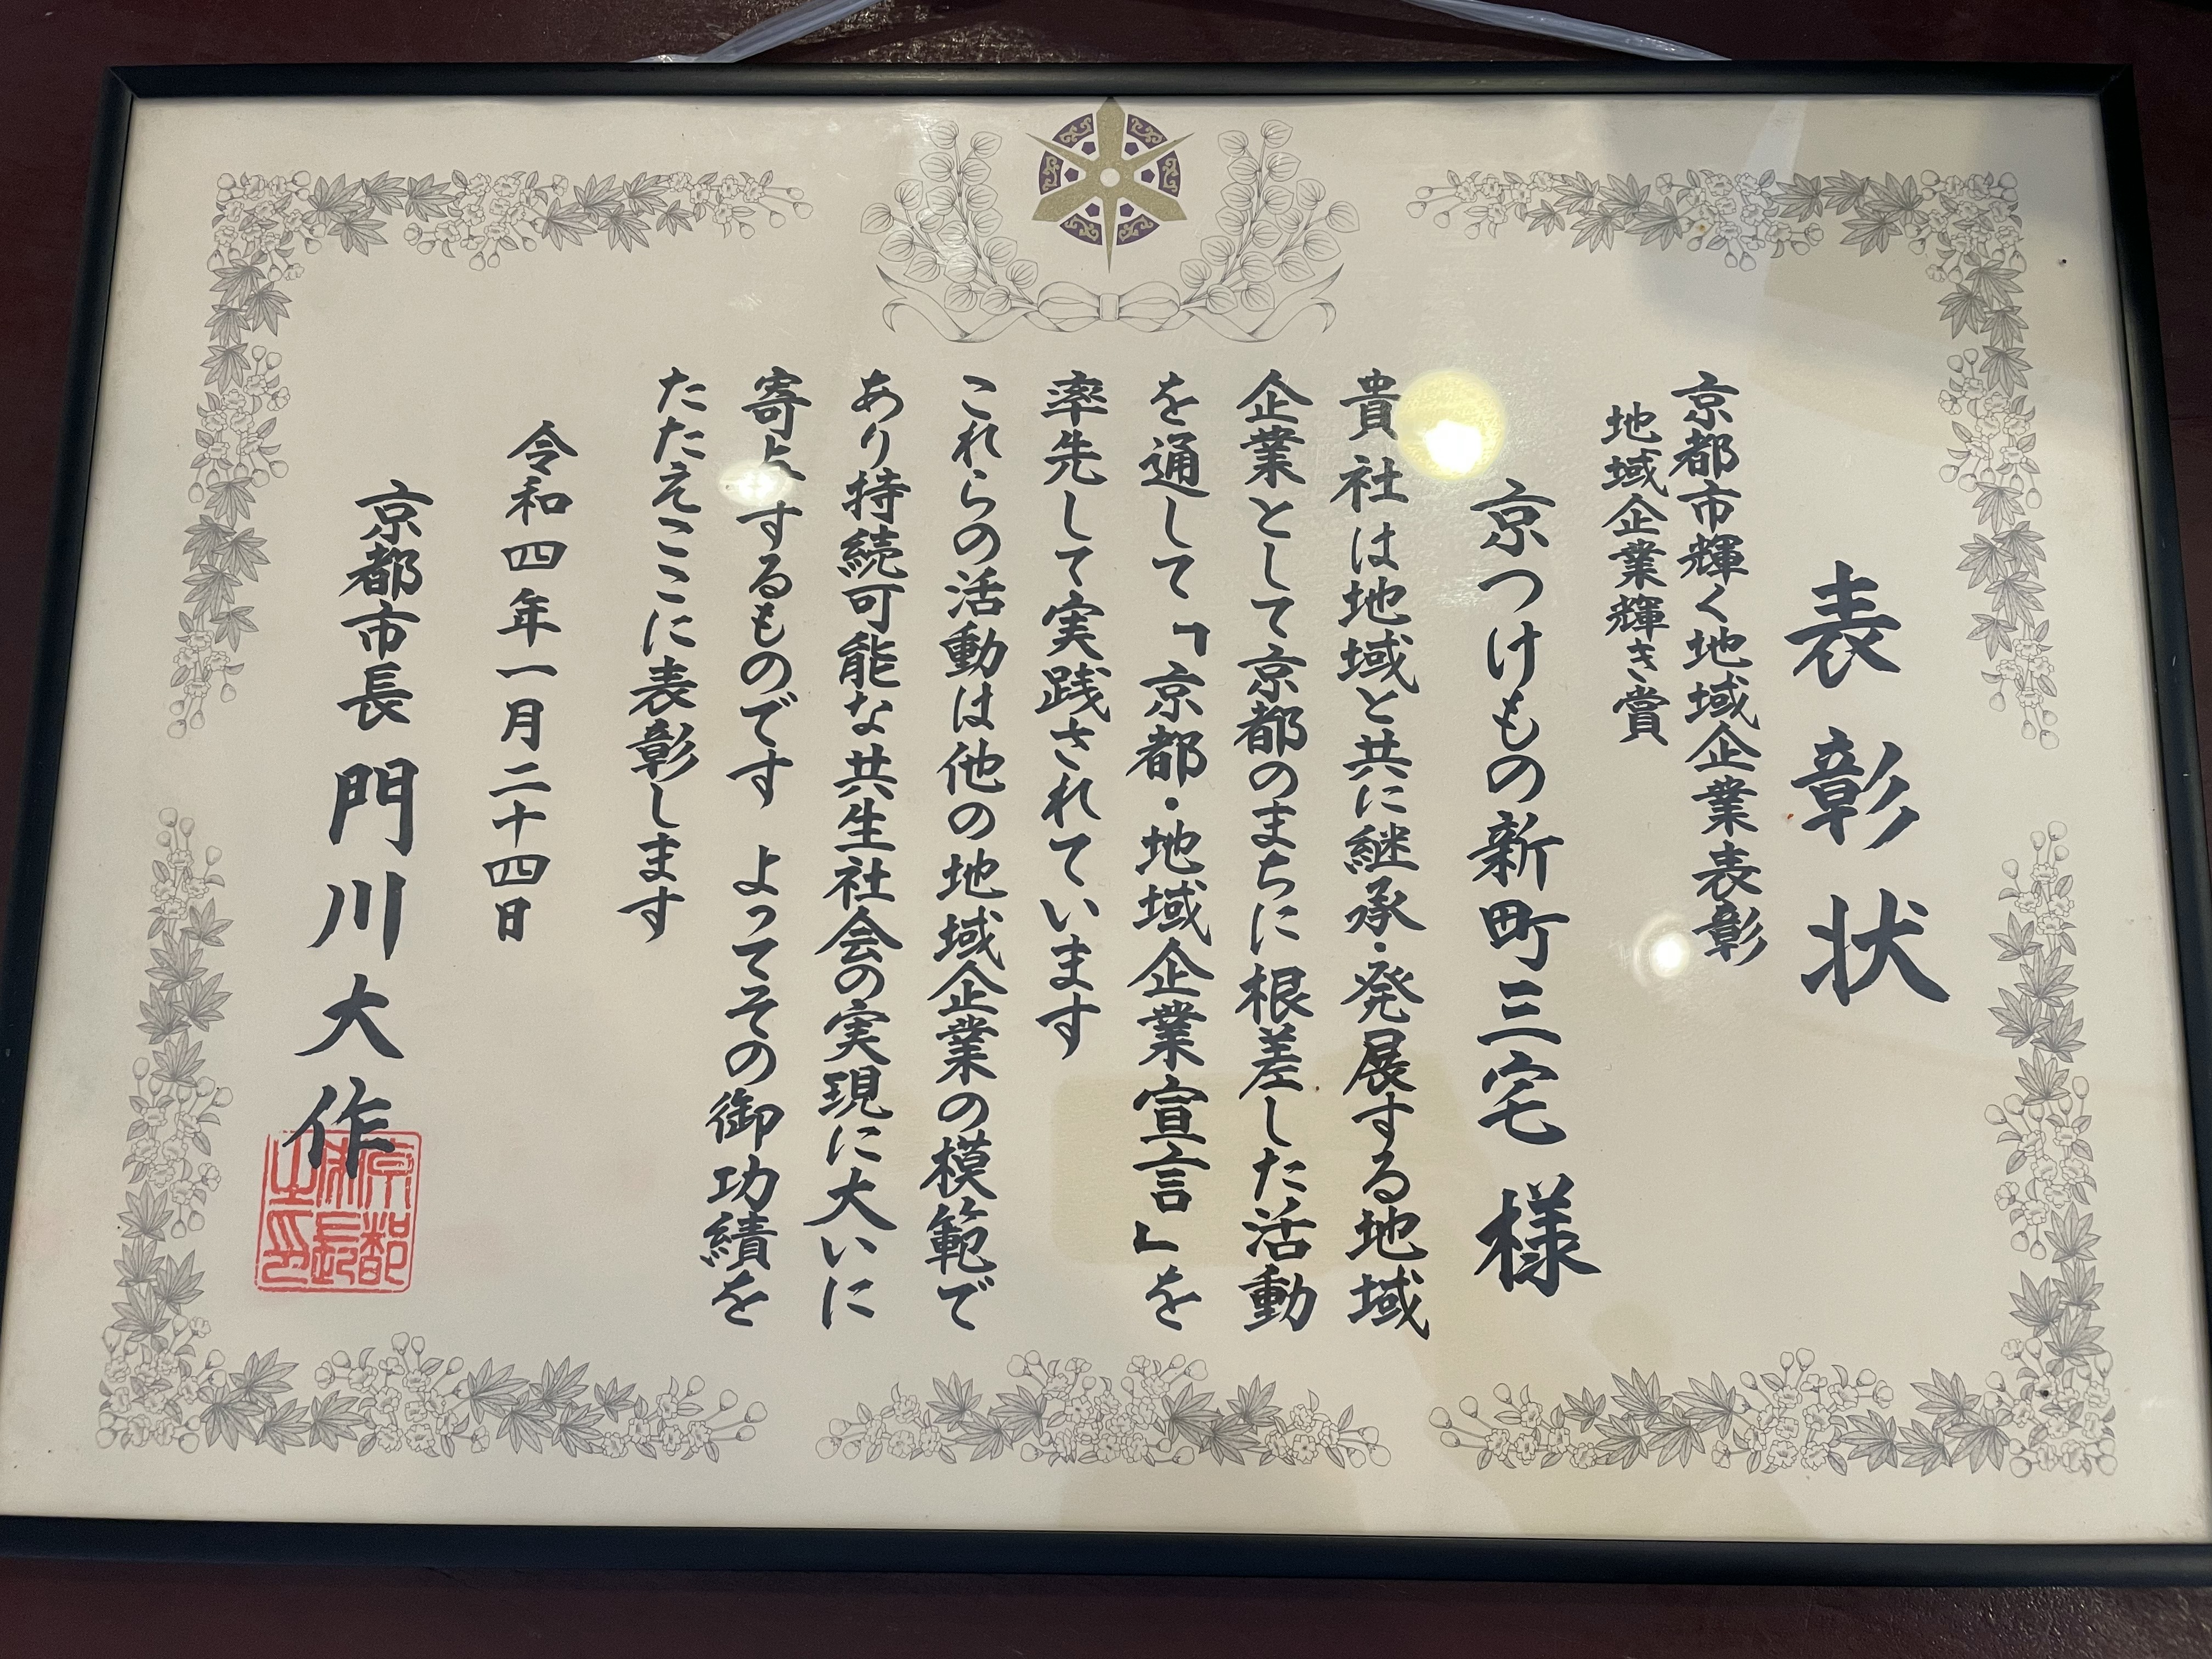 🏆令和3年度京都市輝く地域企業表彰「地域企業輝き賞」を受賞いたしました！